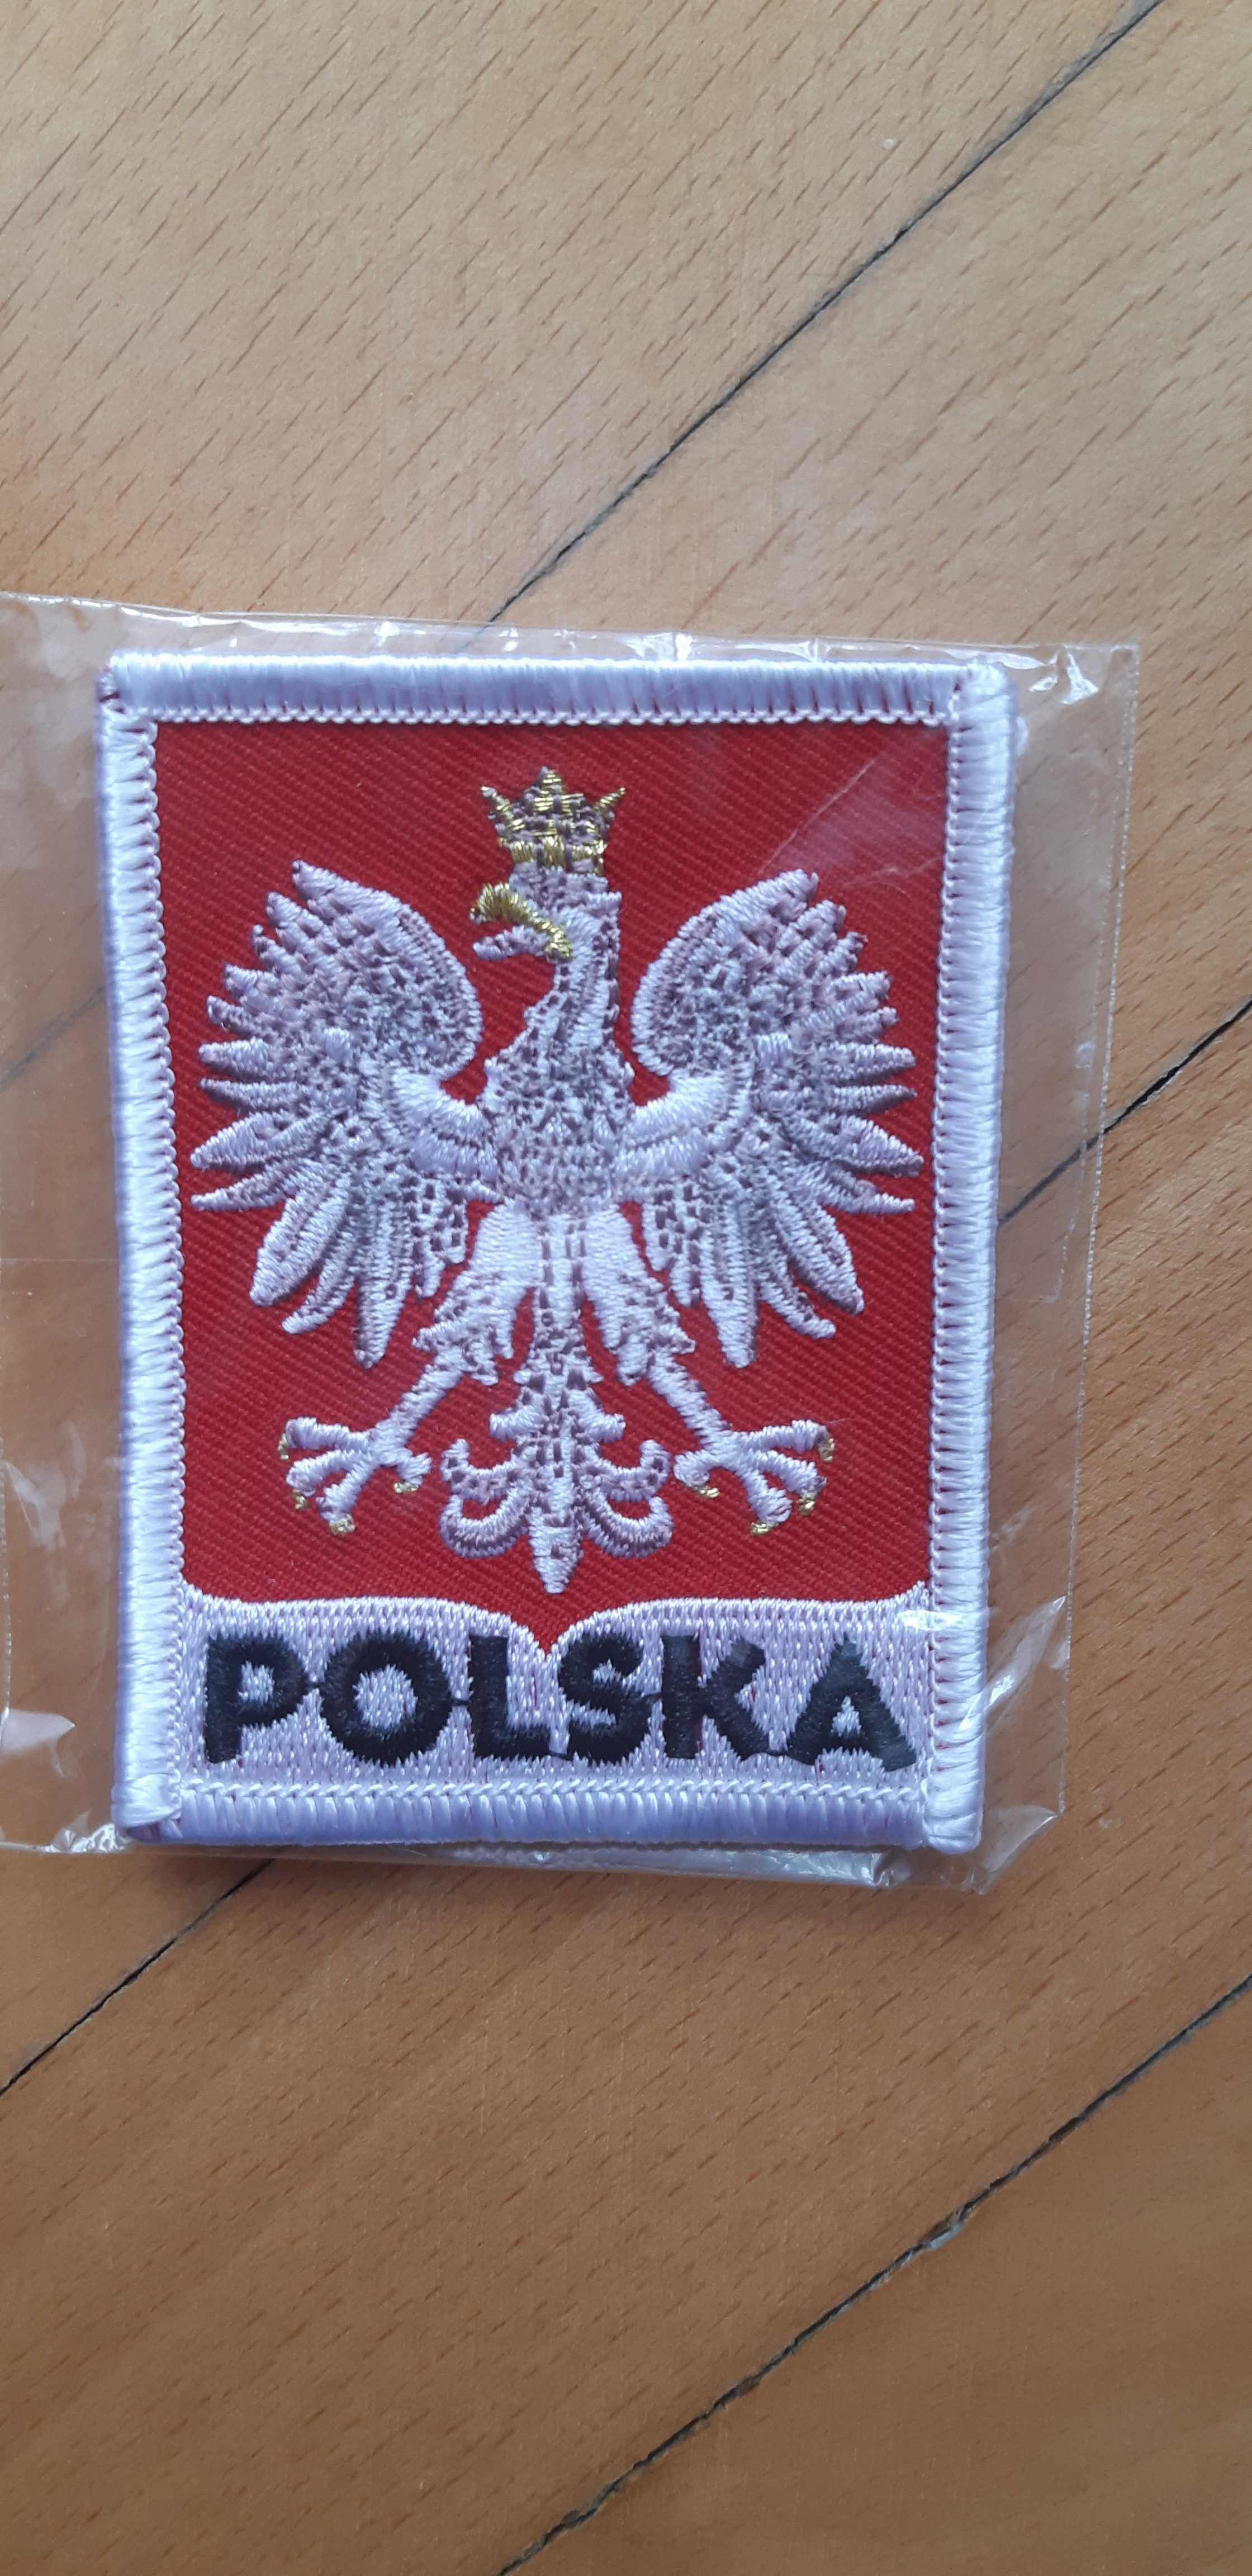 naszywka Polska - nowa 5,5 cm x 7,5 cm